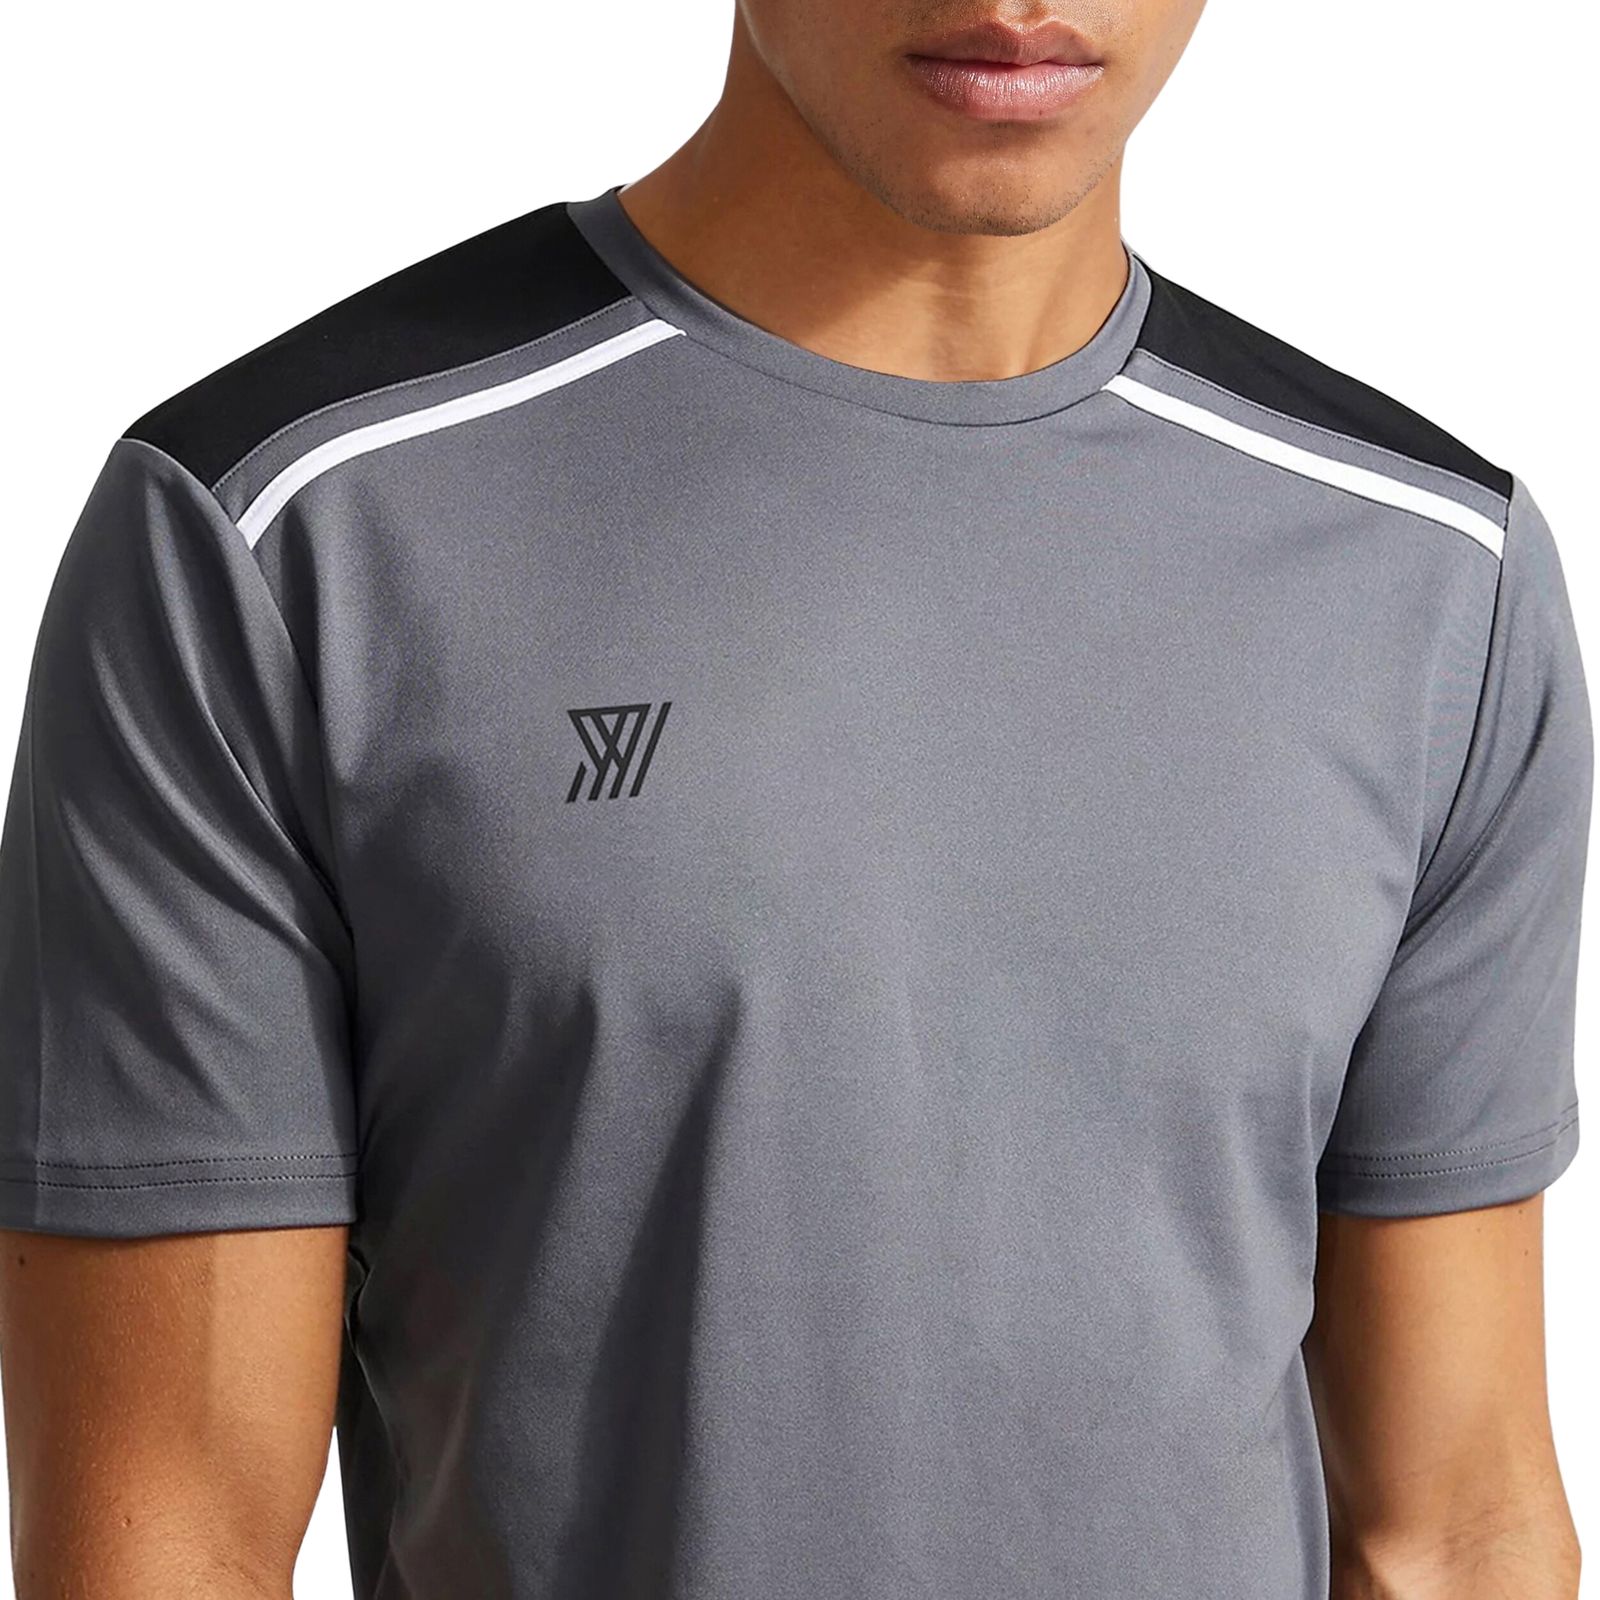 ست تی شرت و شلوارک ورزشی مردانه نوزده نودیک مدل ST1918 DGB -  - 3